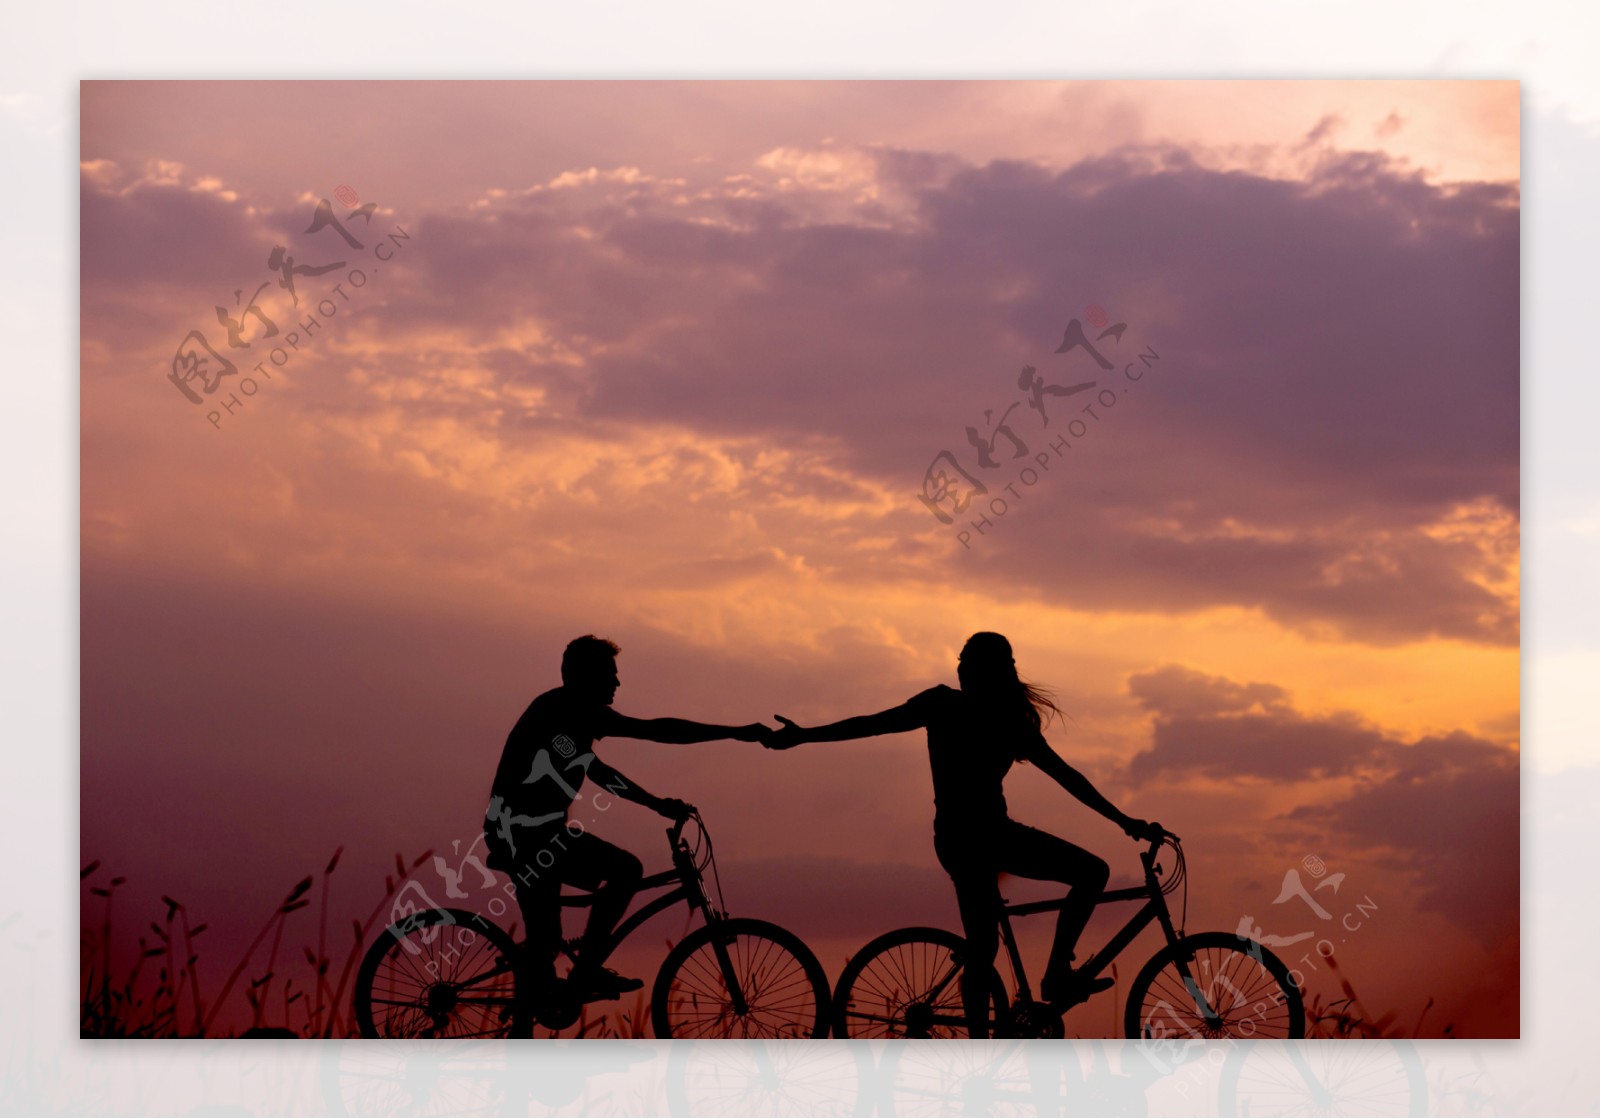 简单爱，动漫情侣骑单车唯美图片，卡通情侣…－堆糖，美好生活研究所